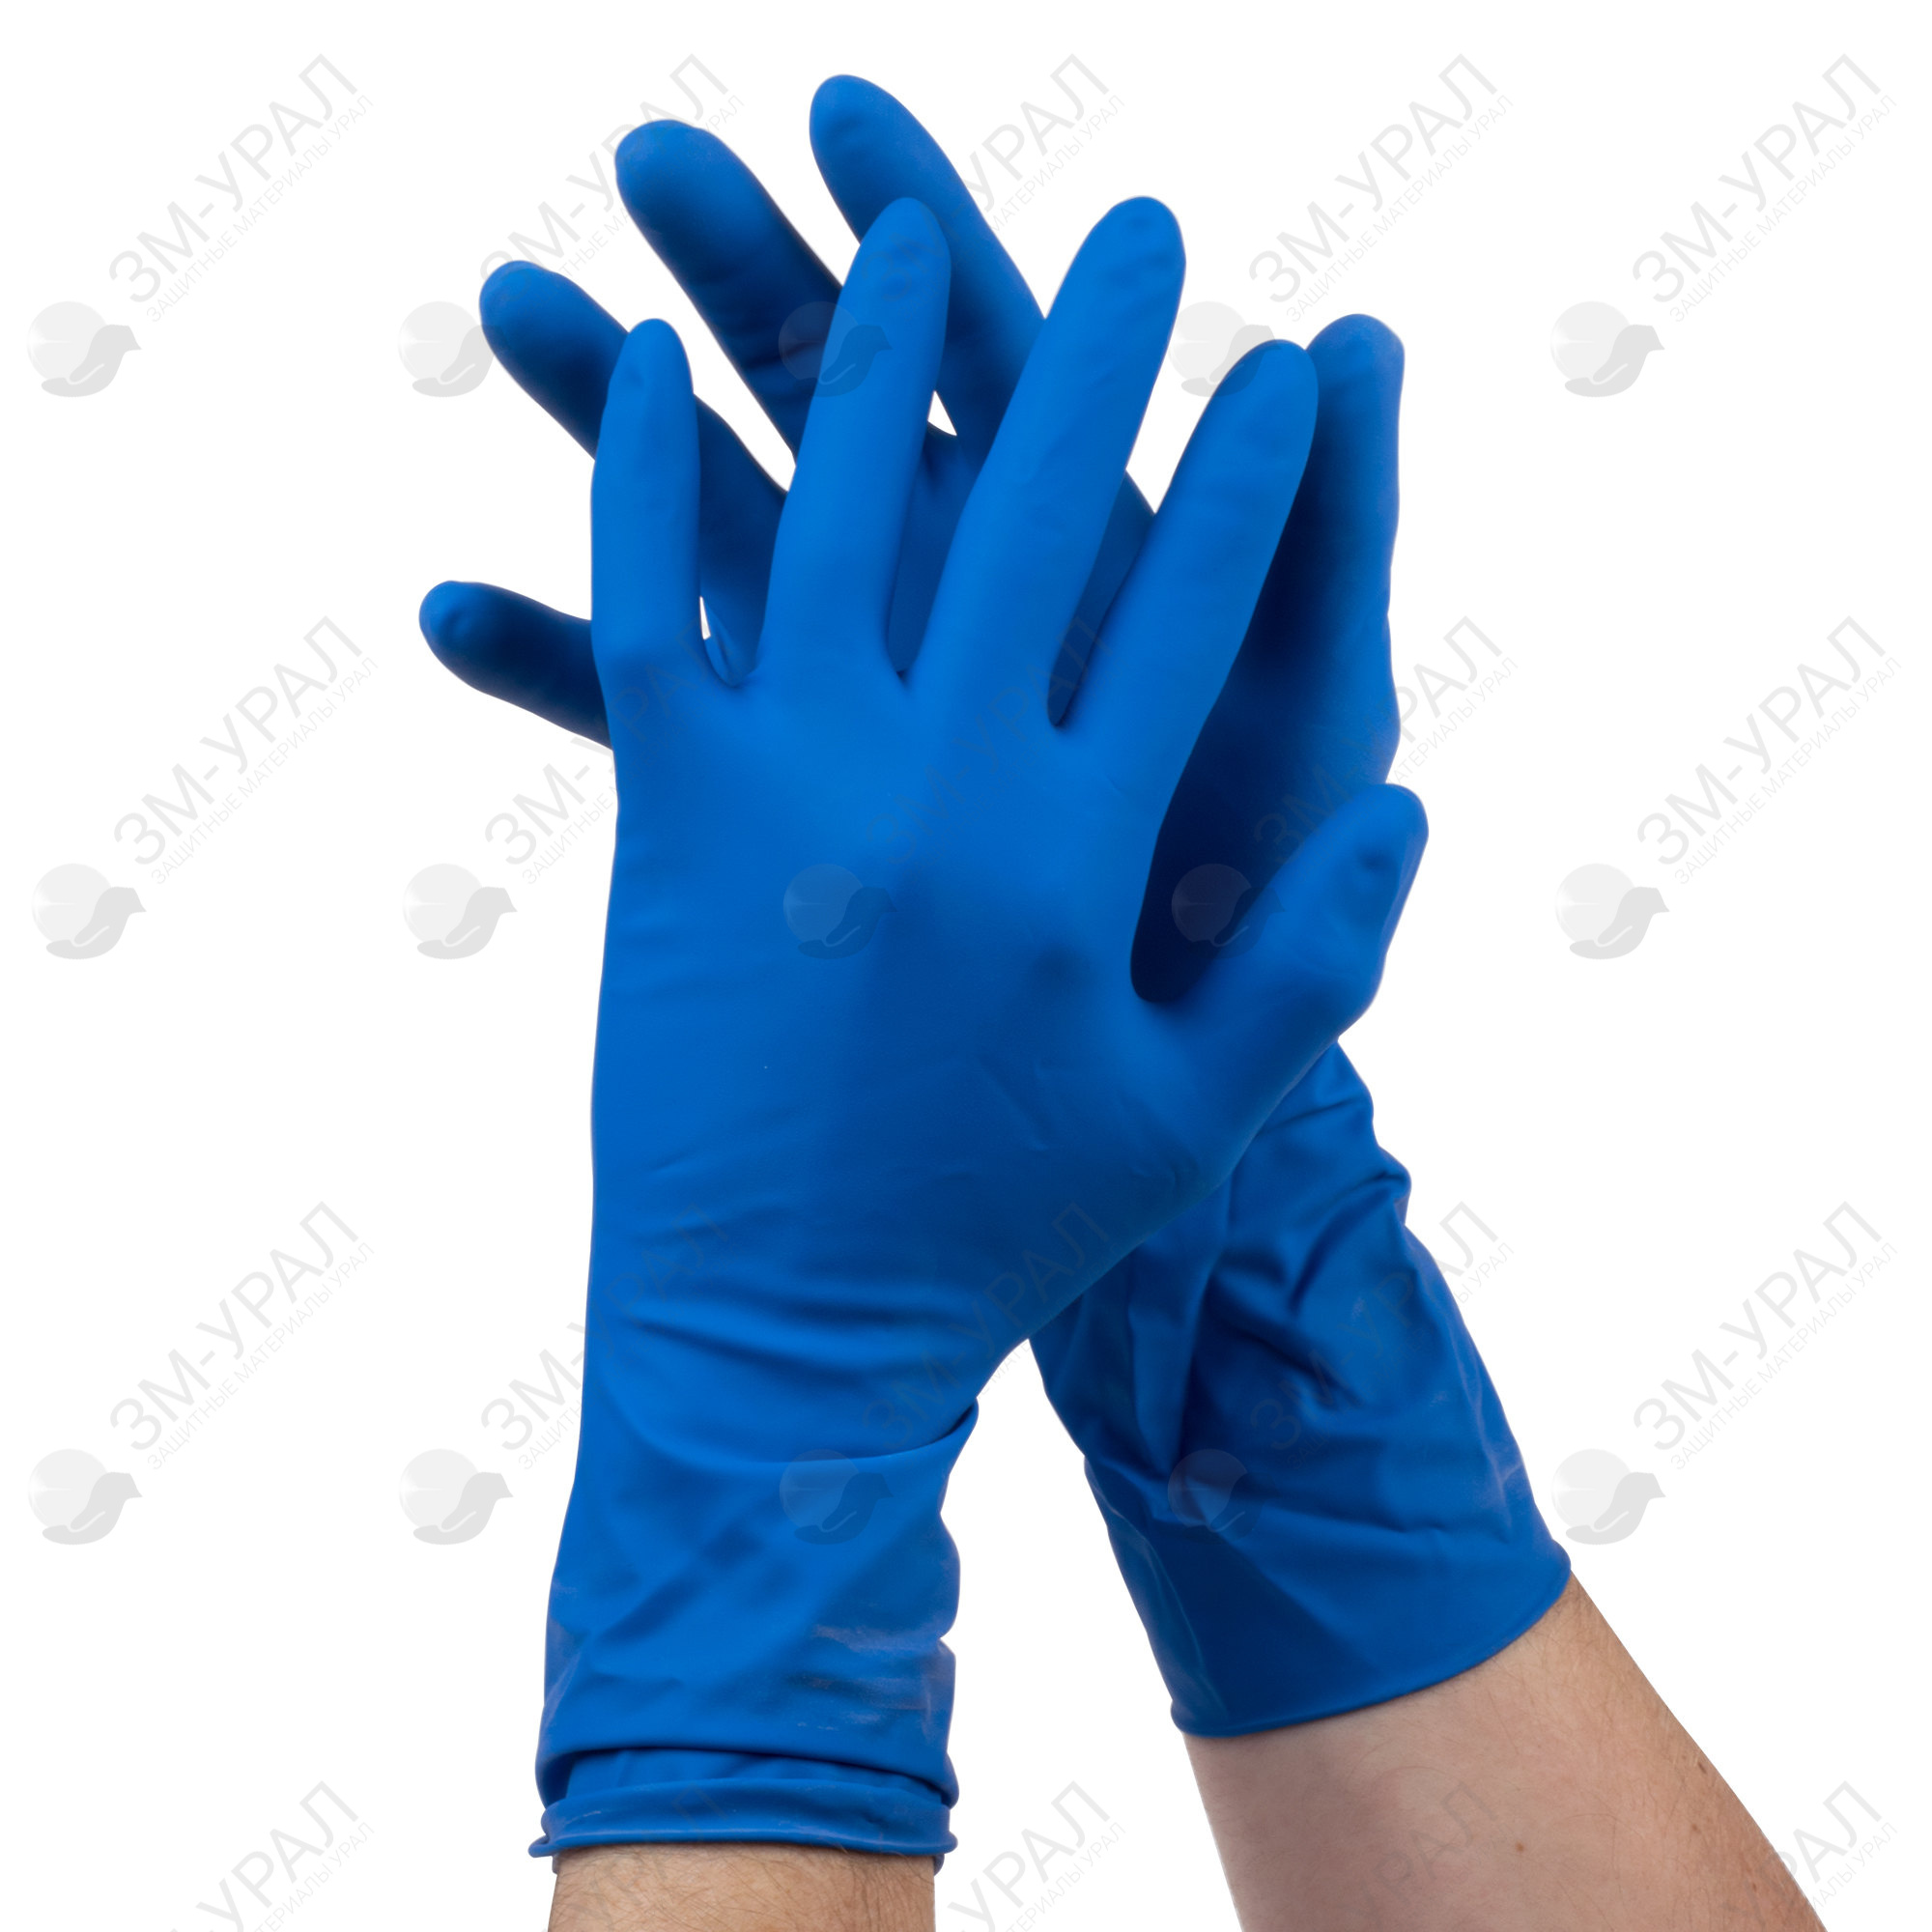 Купить прочные перчатки. Перчатки household Gloves High risk XL. Перчатки латексные household Gloves High risk повышенной прочности (25 пар). Перчатки High risk (повышенной прочности) ( m), 25пар/упак, 10упак/кор. Перчатки High risk Matrix нитриловые.